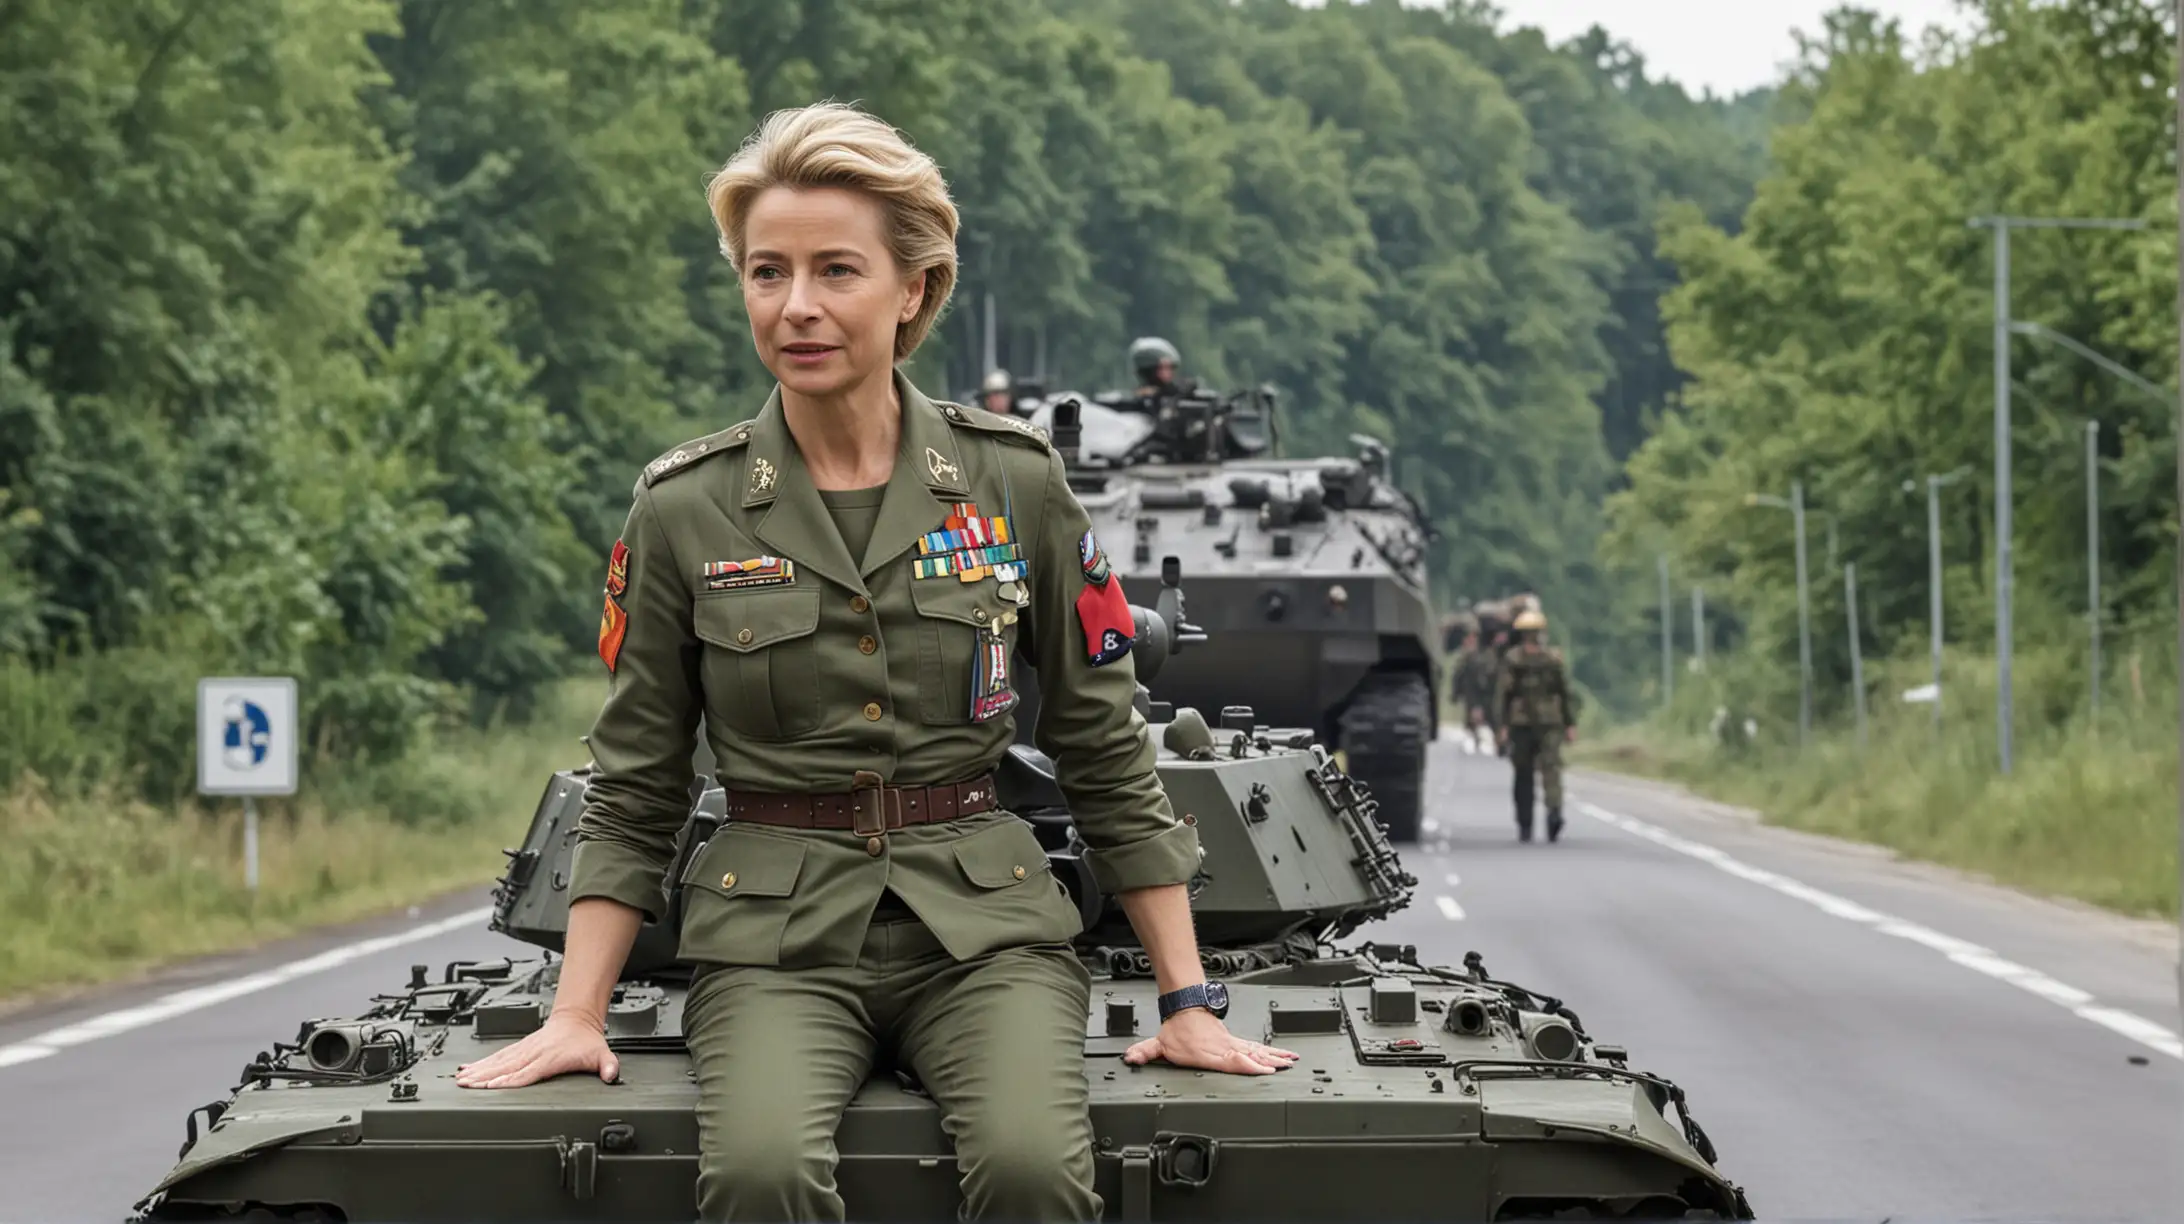 Ursula von der Leyen Military Uniform Tank Portrait